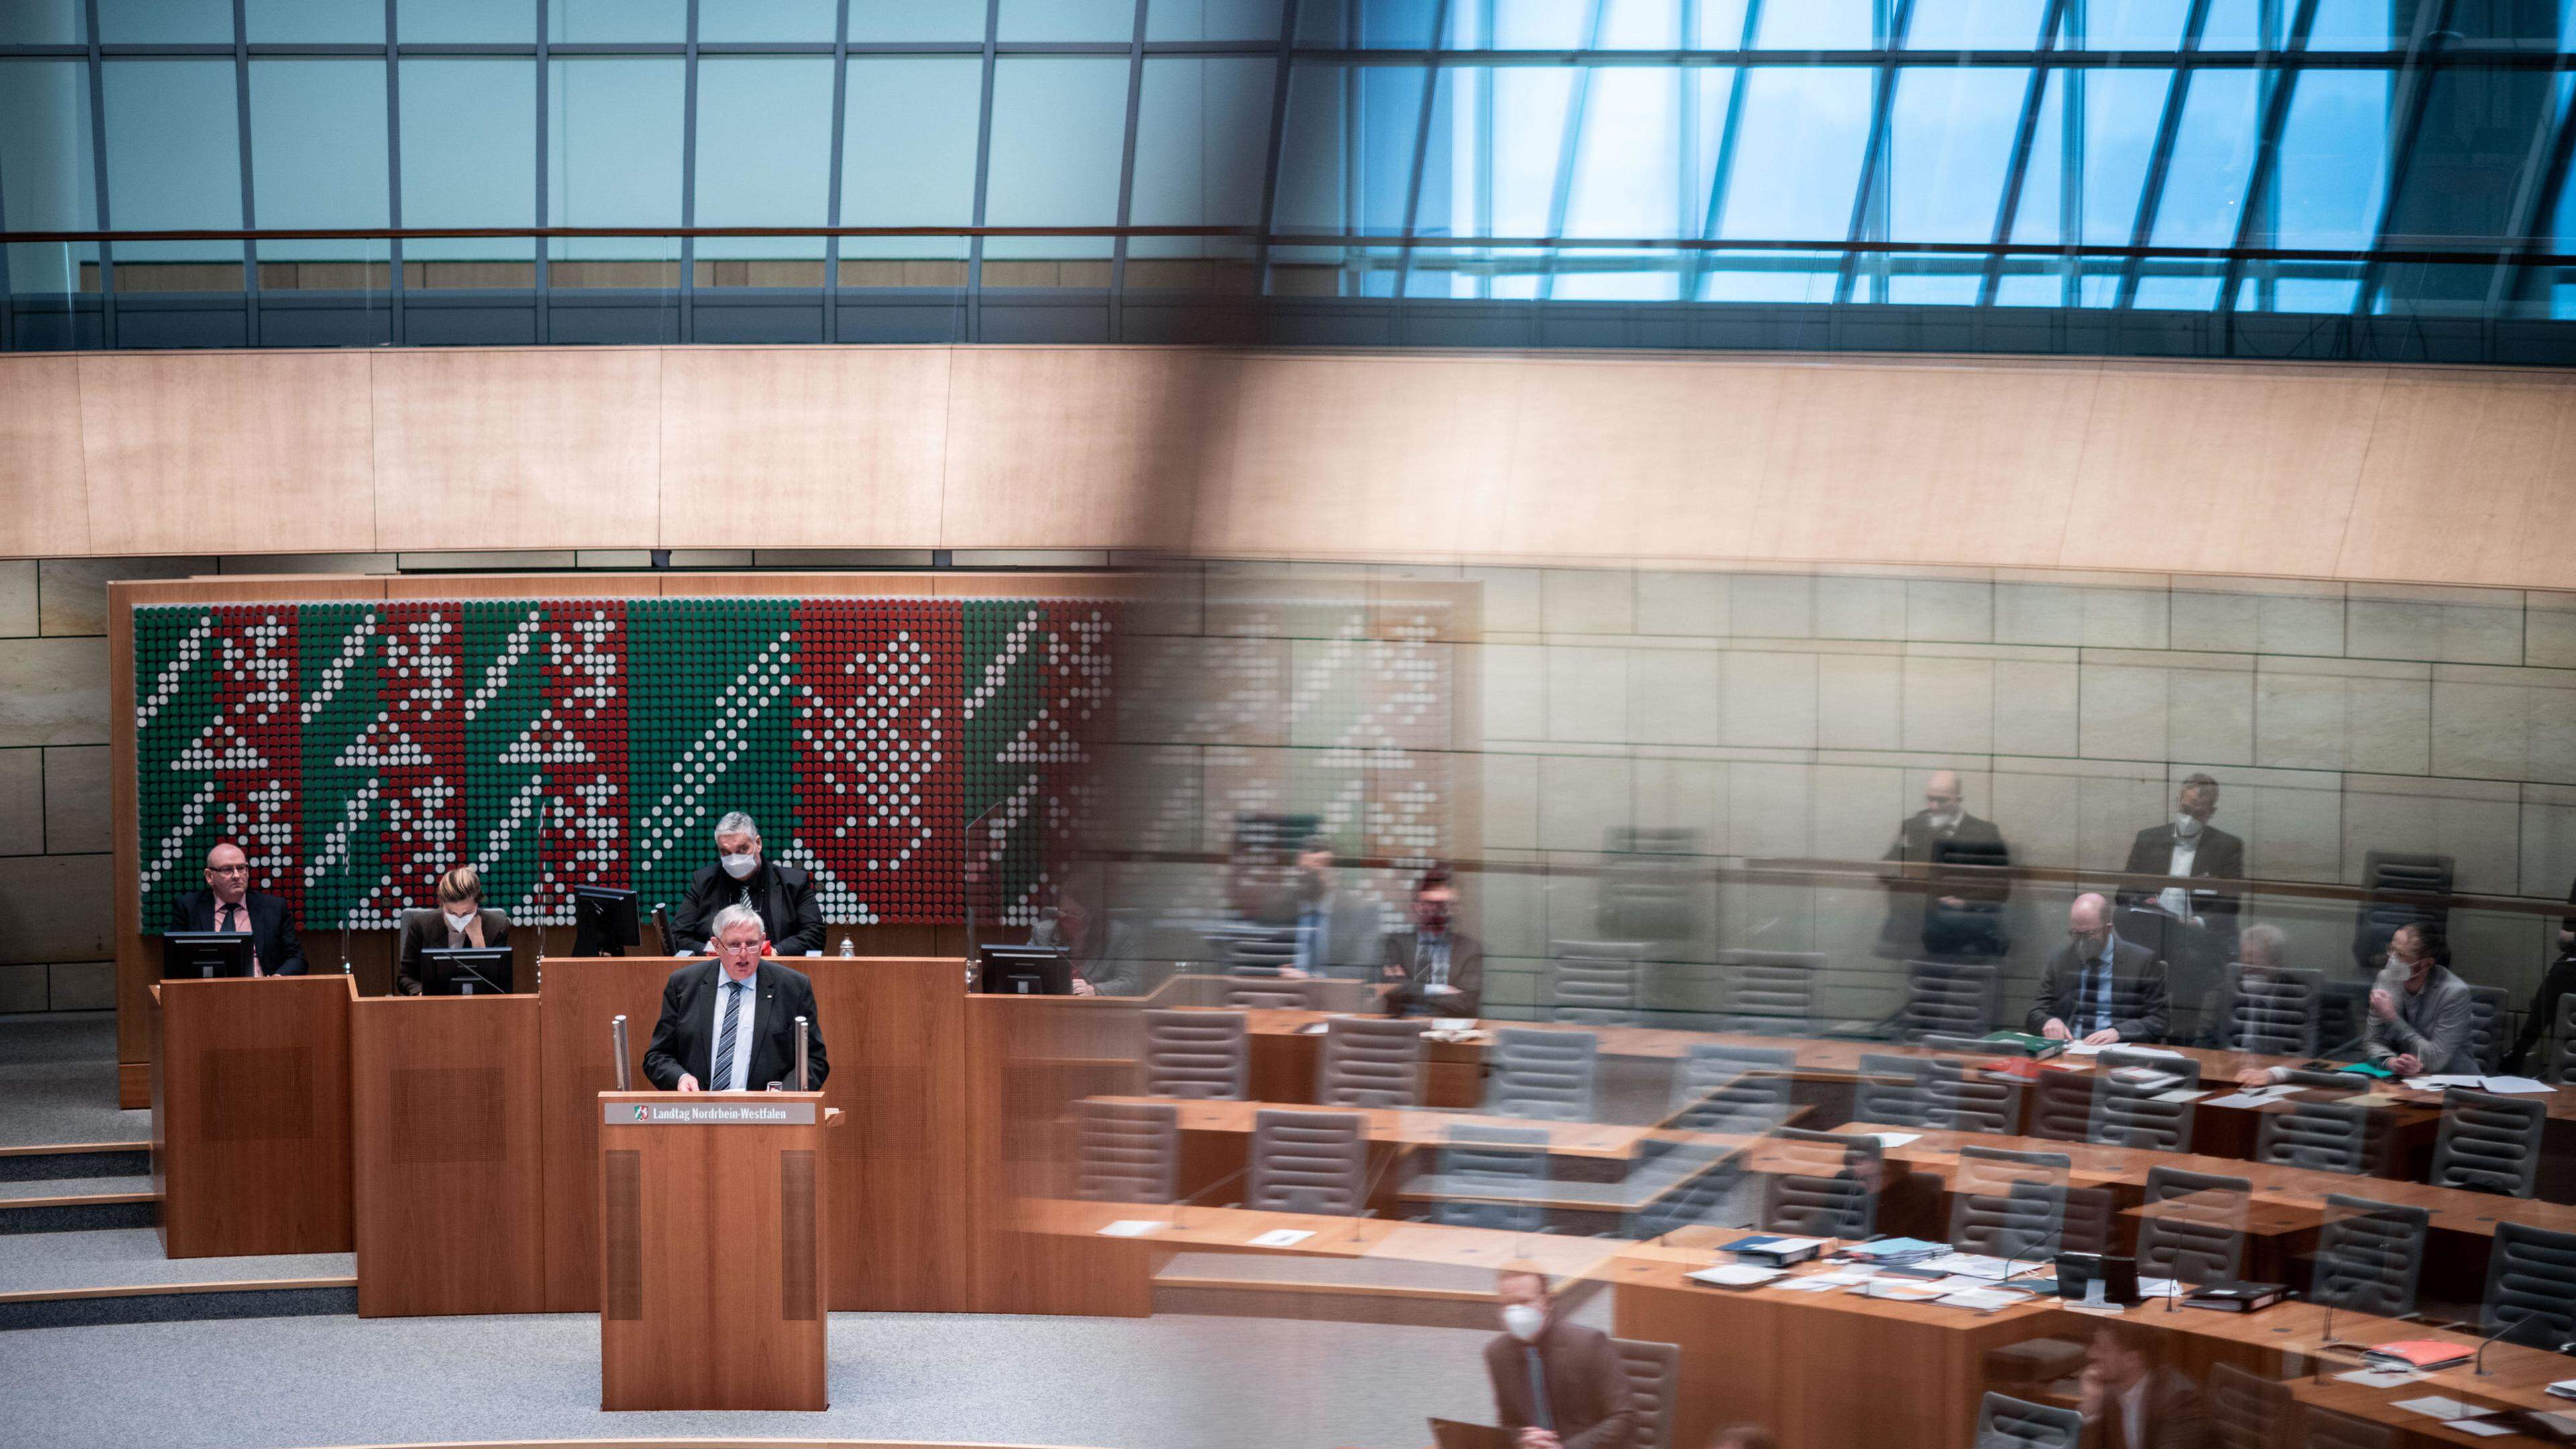 Der Landtag in Düsseldorf beschäftigte sich am Mittwoch unter anderem mit der Neuregelung der Ausbildung für Hebammen.